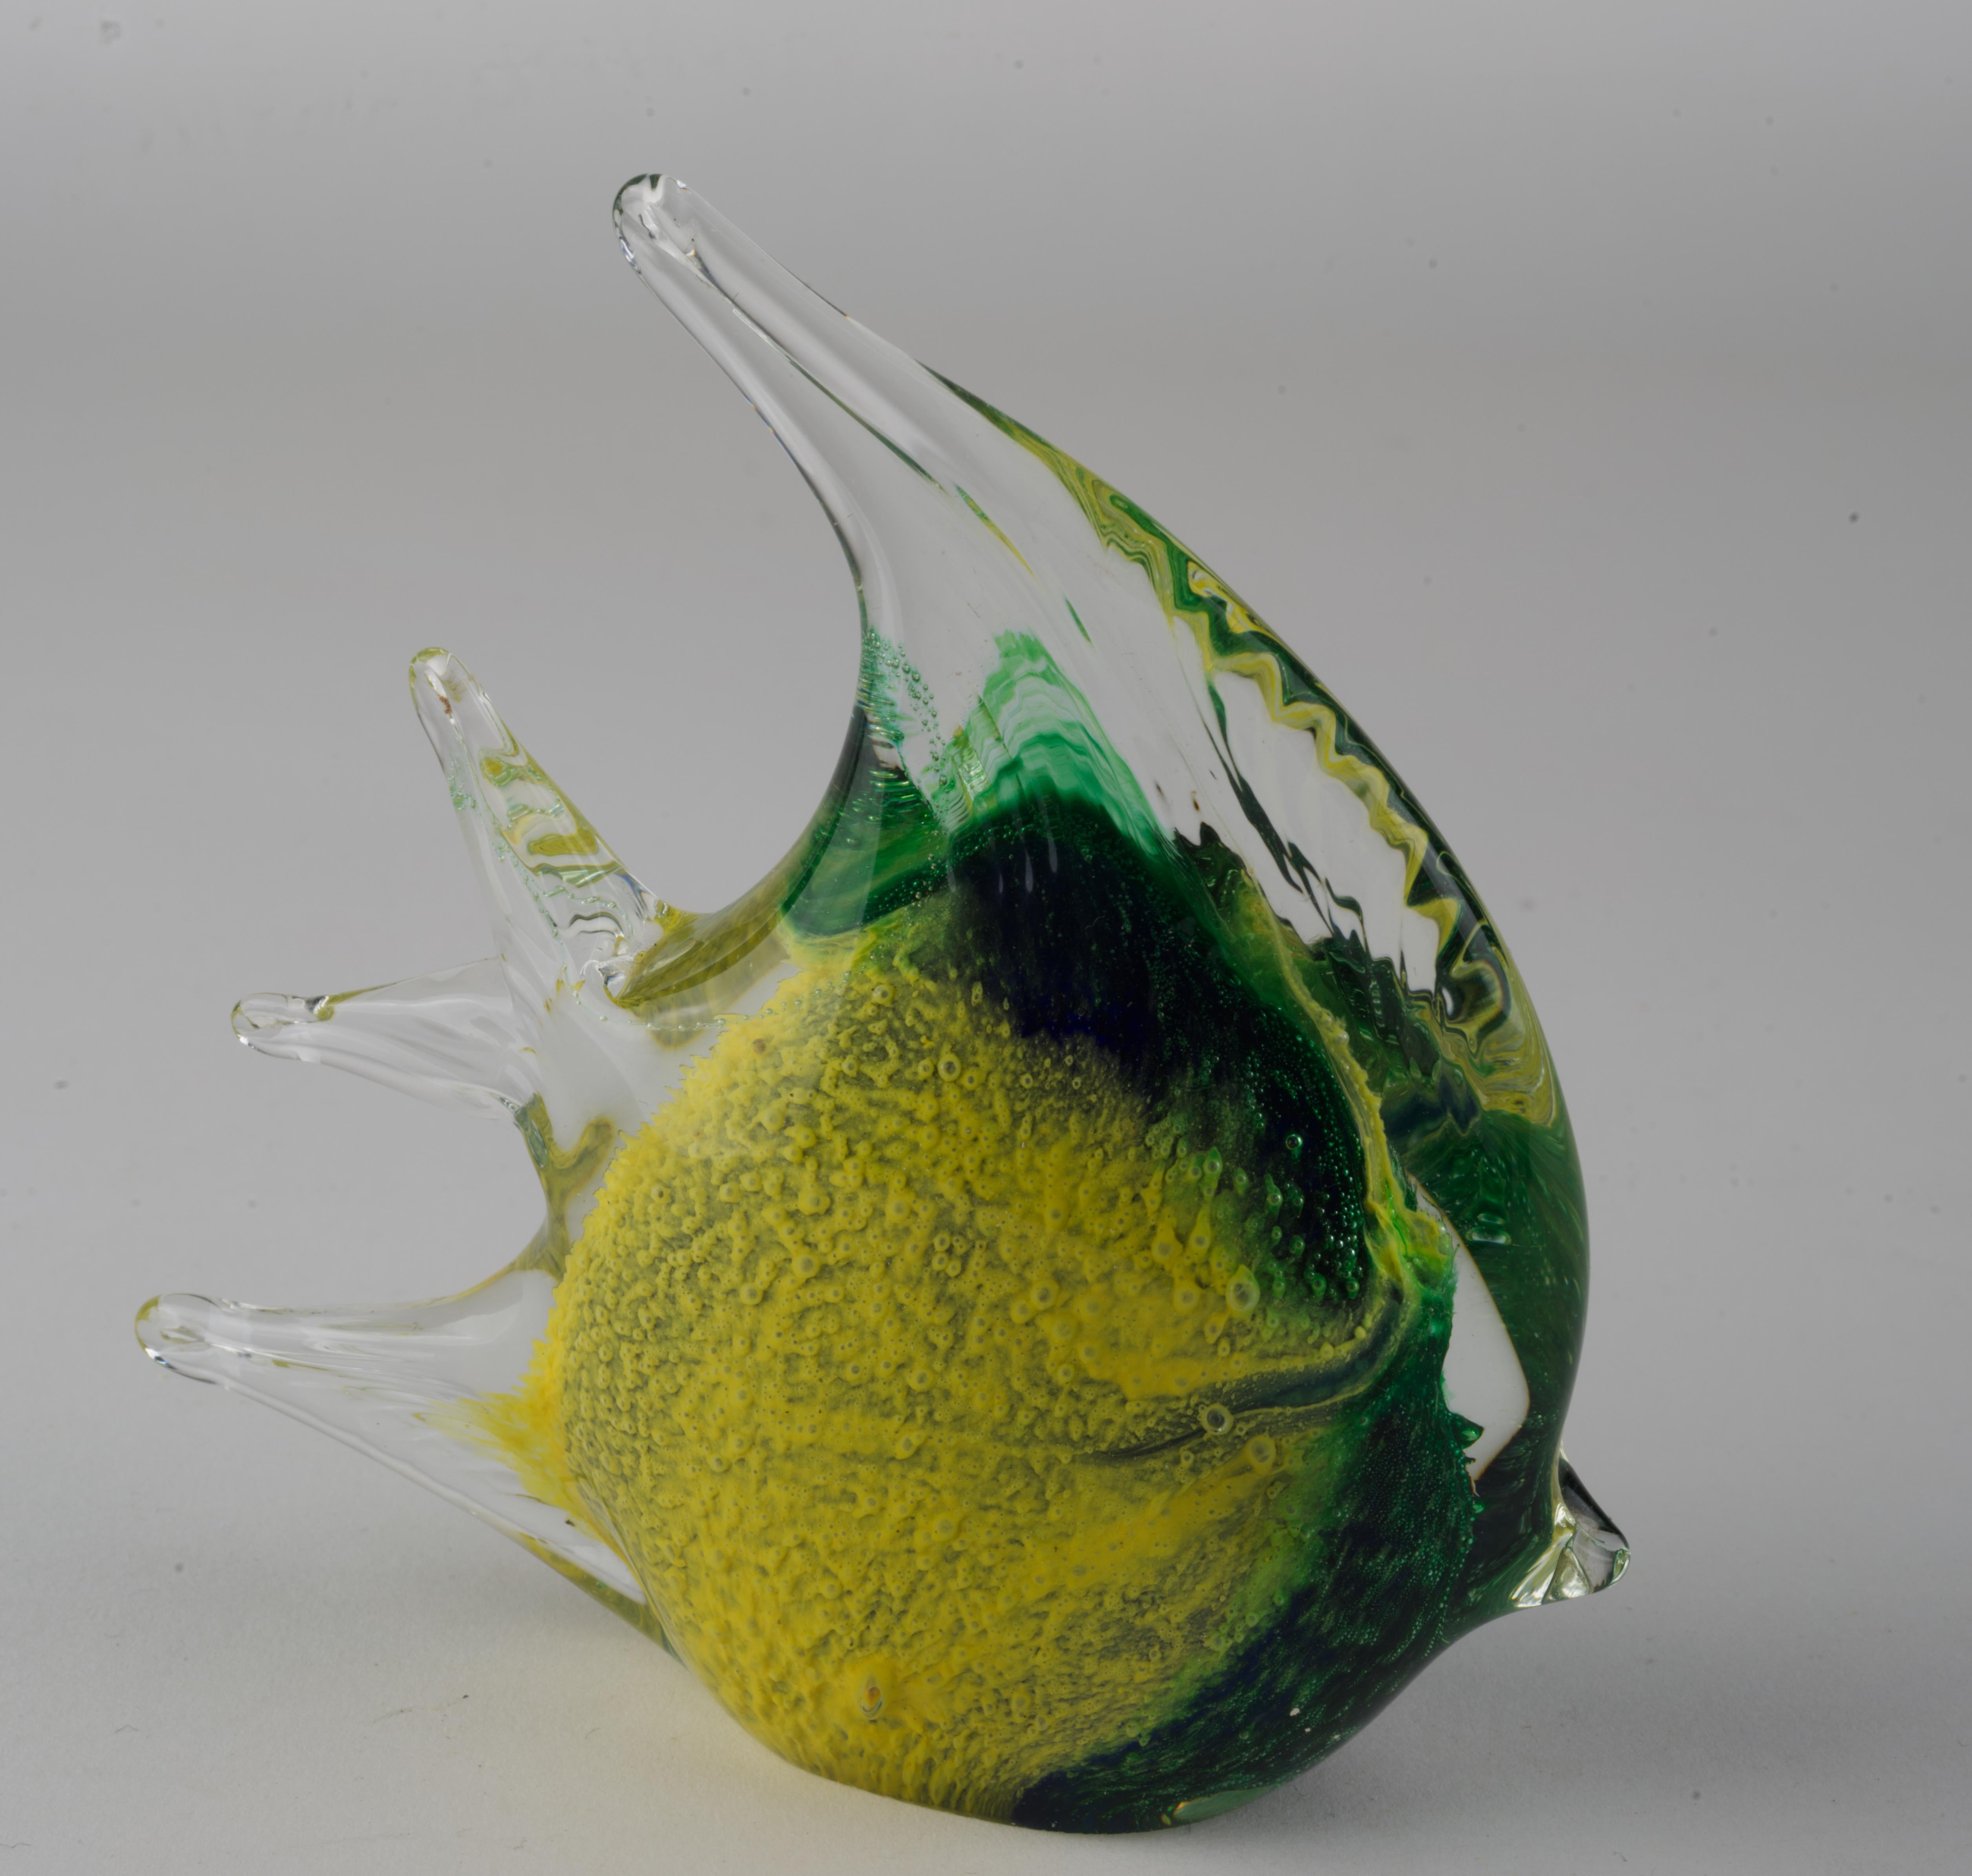 La figurine ou le presse-papier en forme de poisson tropical vert et jaune est fabriqué selon la technique sommerso ; le verre coloré est trempé dans des pigments, puis recouvert de verre transparent. Des bulles contrôlées sont utilisées pour donner